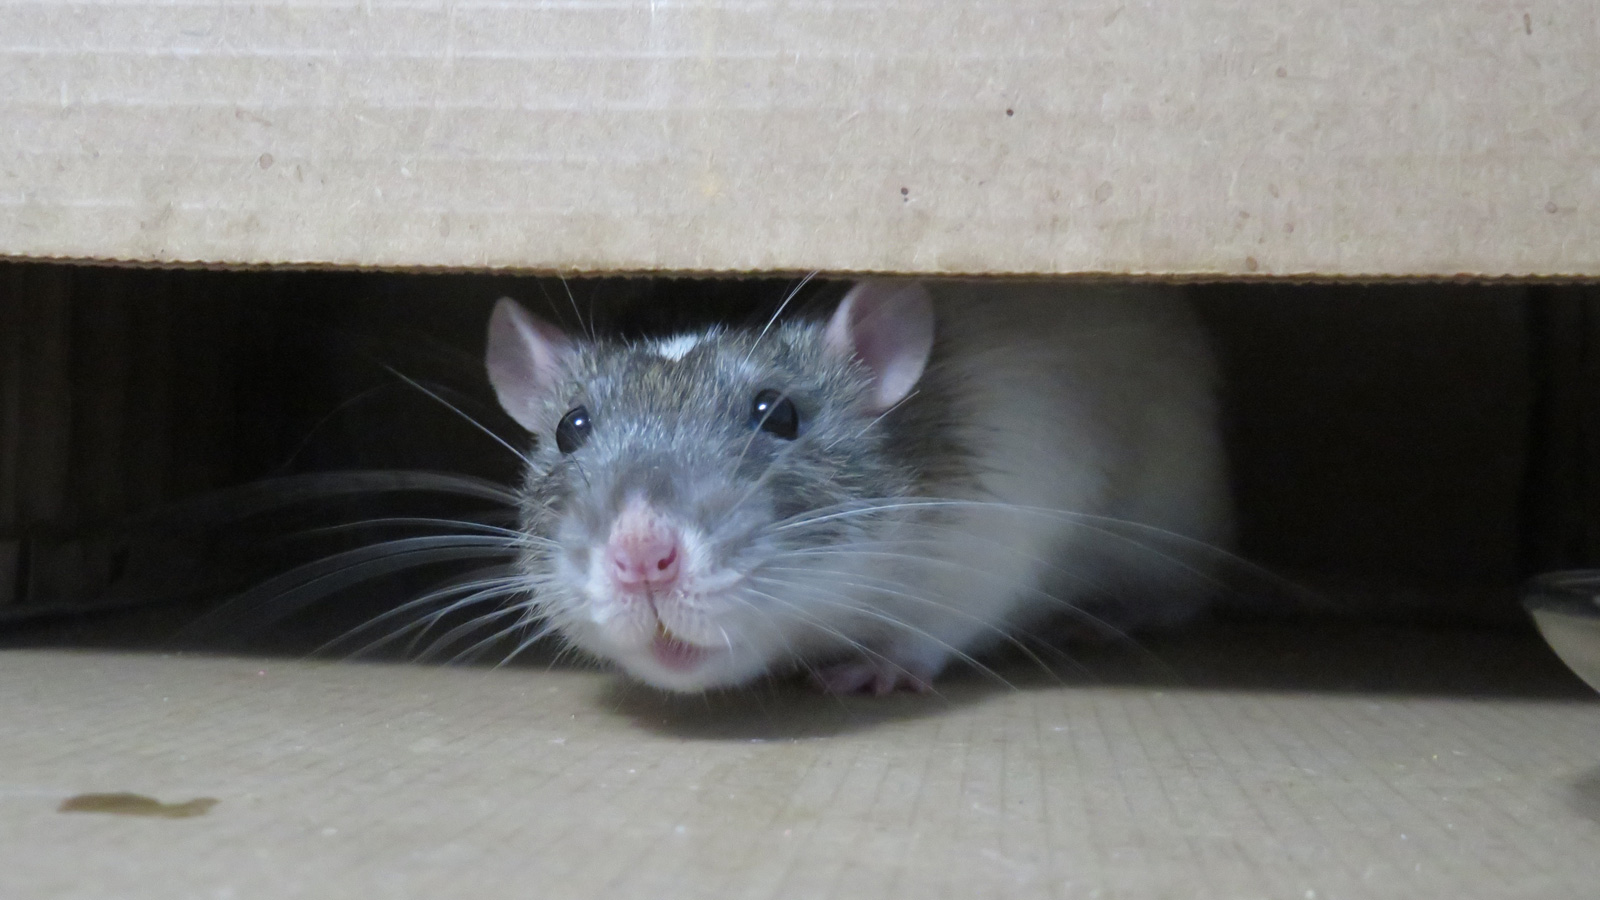 Mobilyaların altına saklanan fare